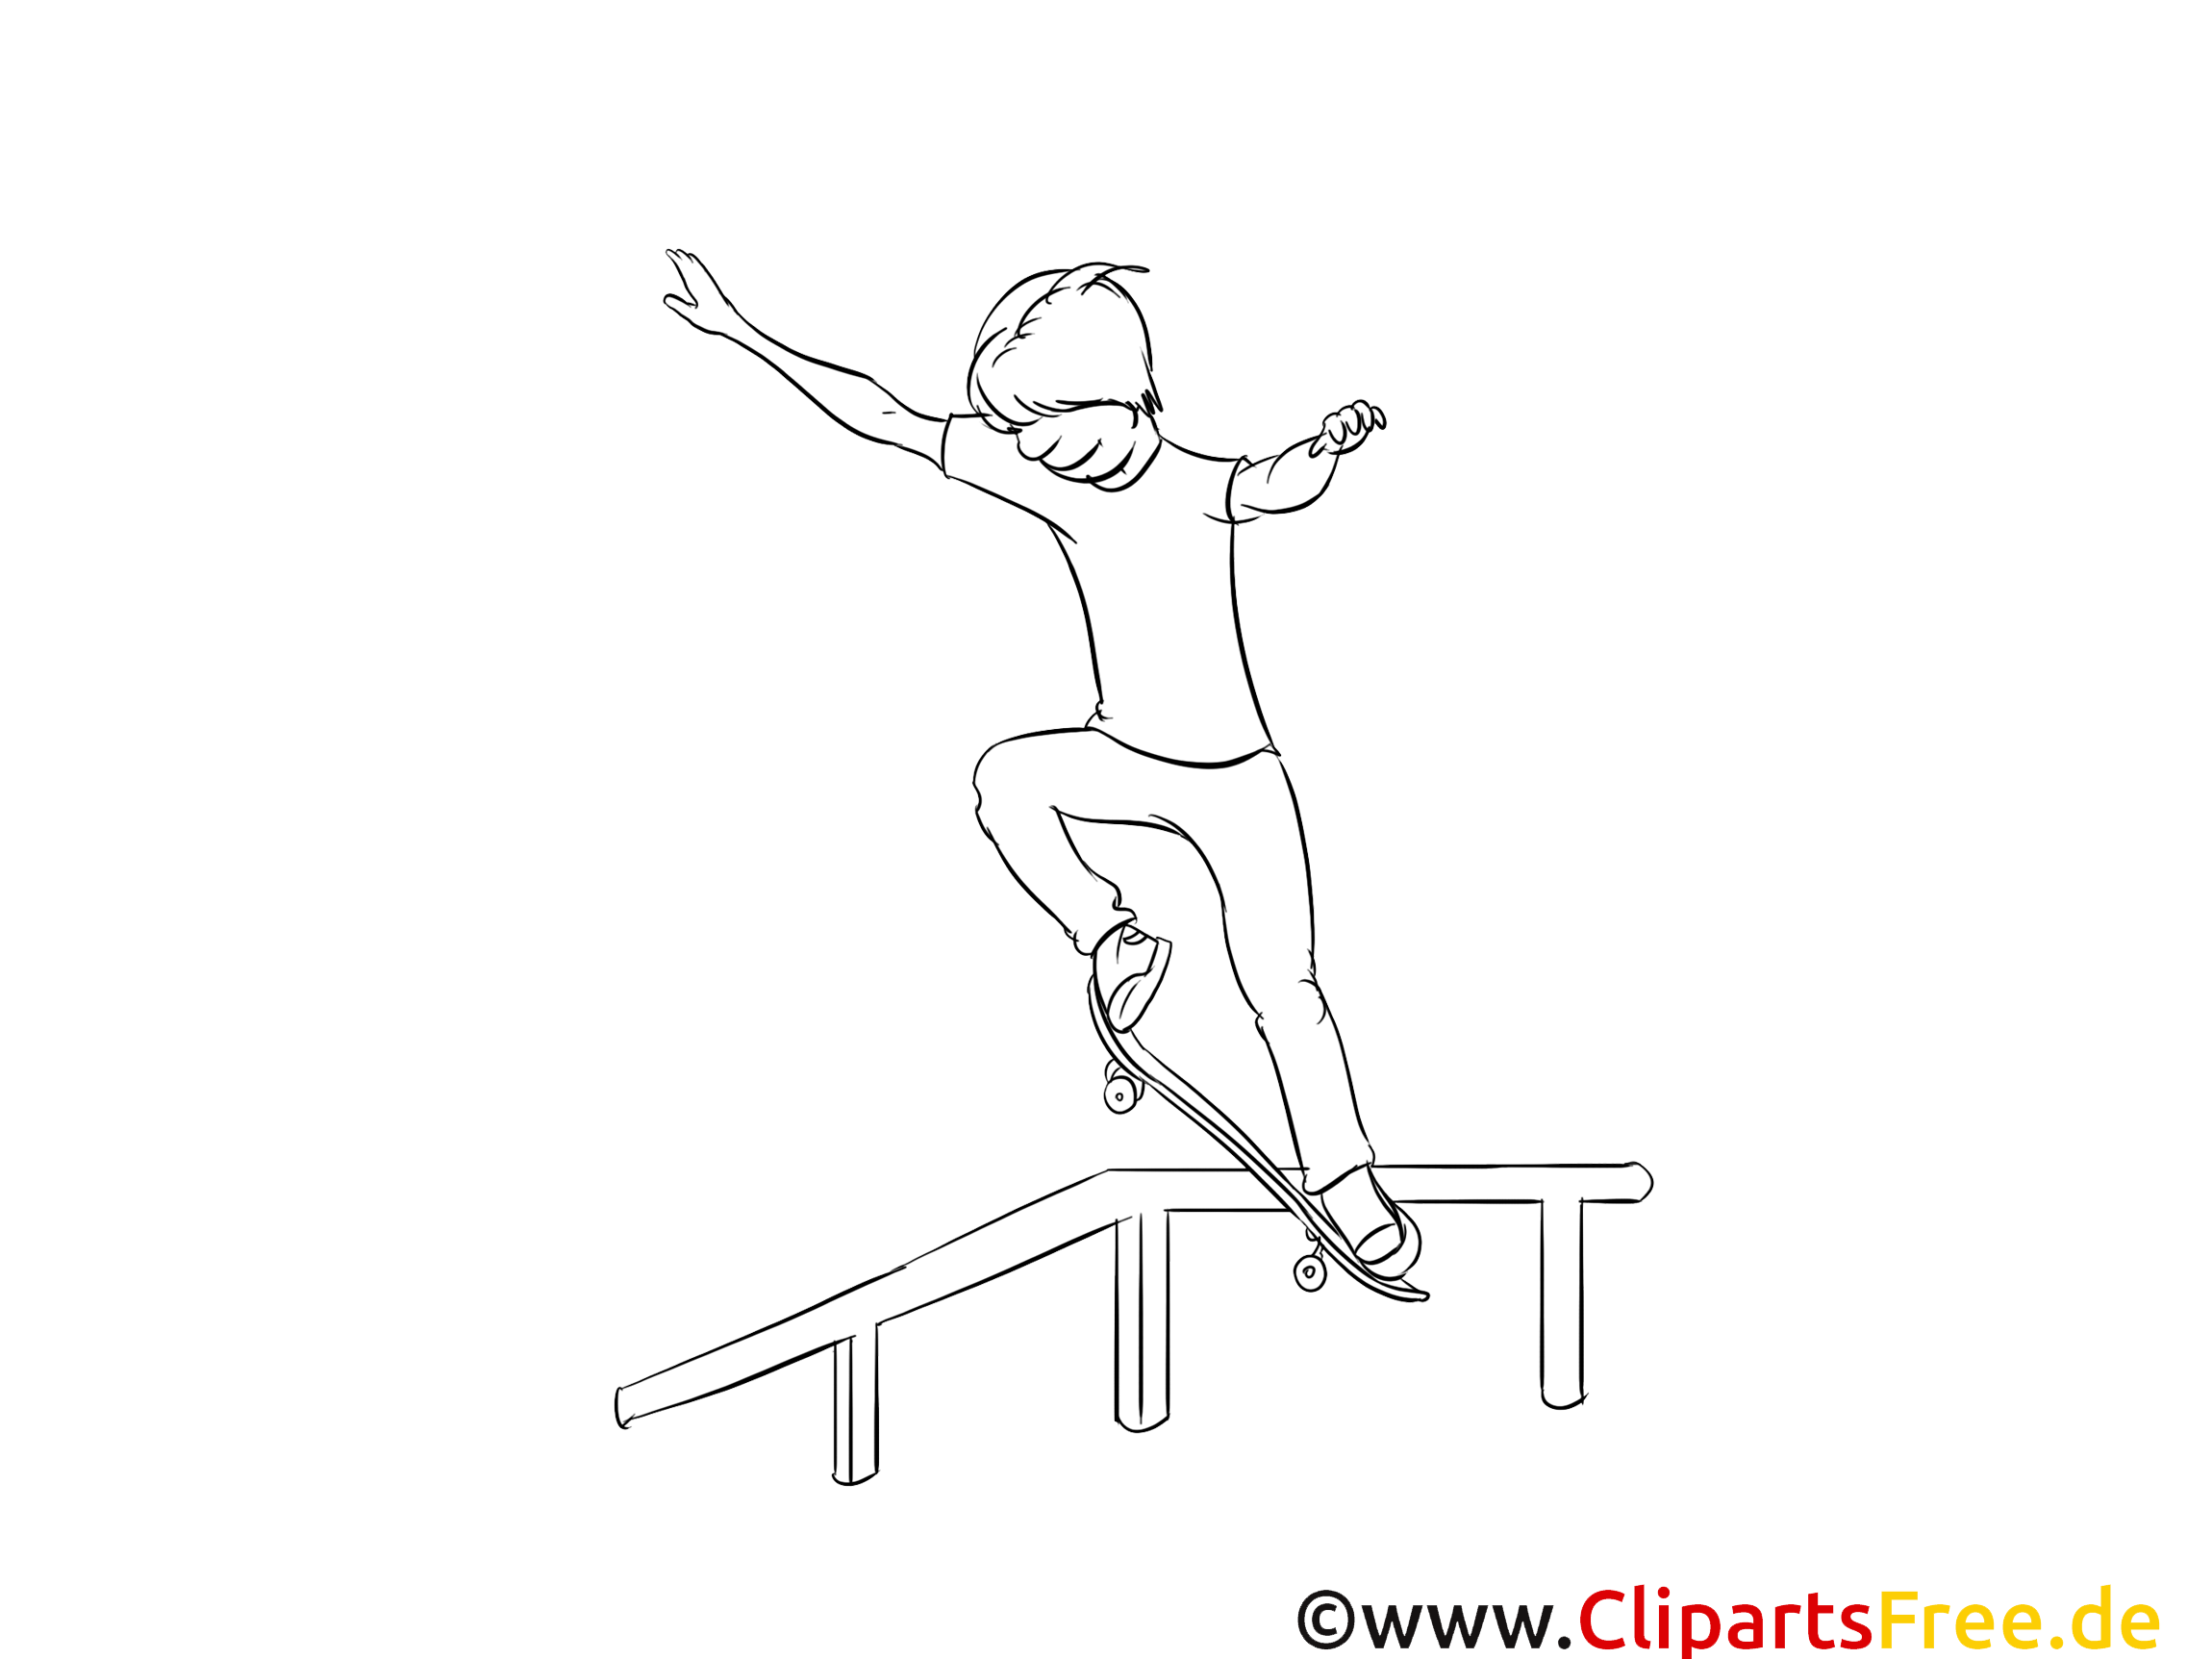 Skateboard clipart gratuit – Sport à colorier